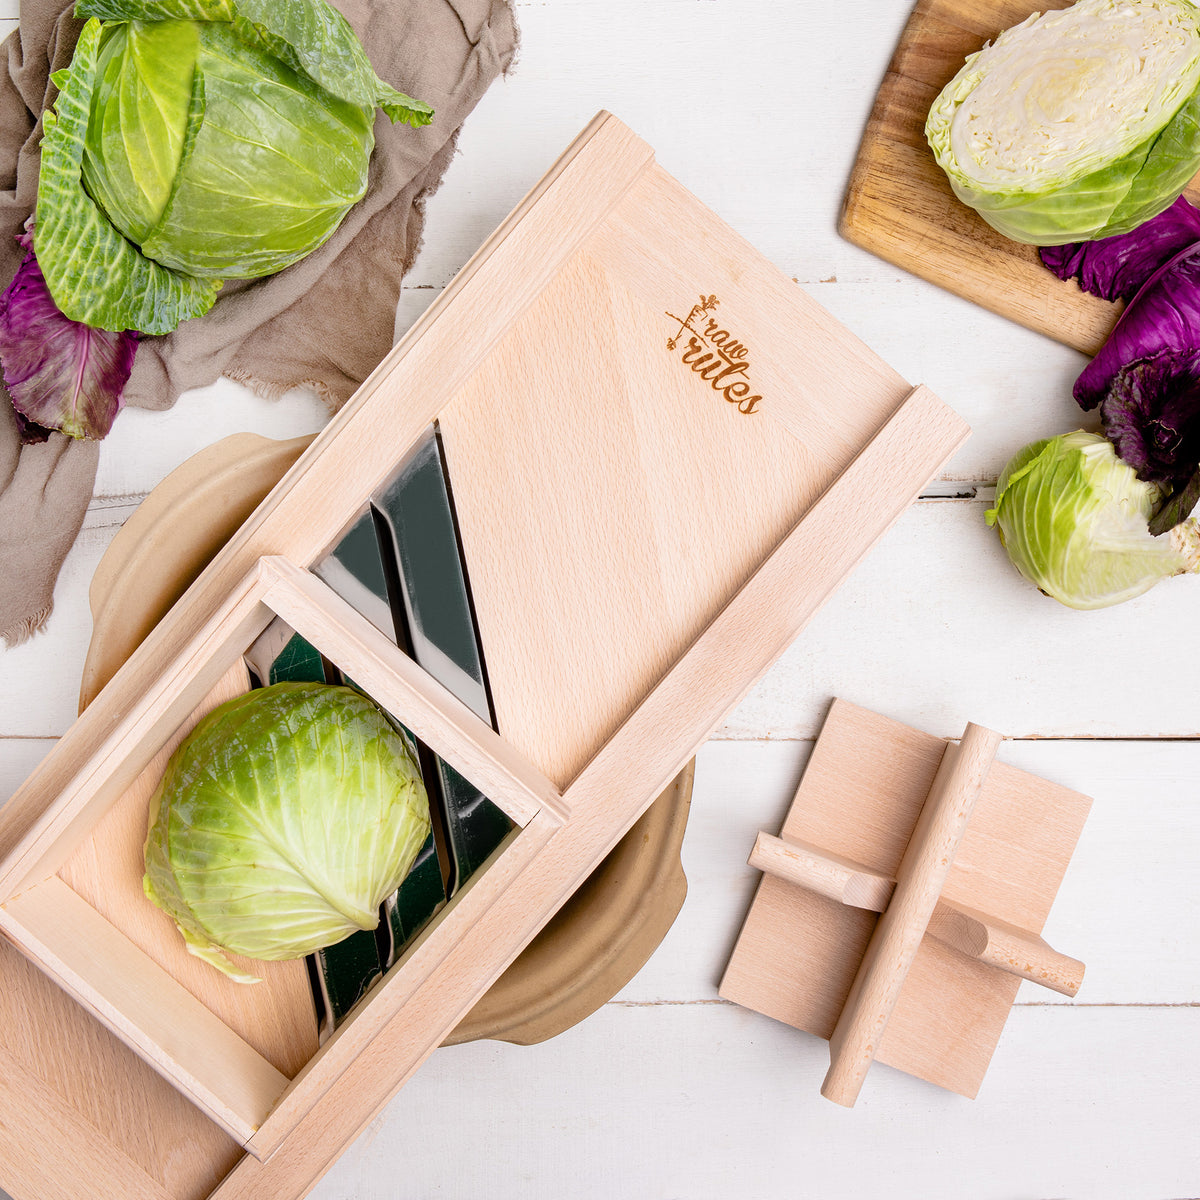 Cabbage Hand Slicer Shredder Vegetable Kitchen Manual Cutter For Making  Homemade Coleslaw Sauerkraut Stainless Steel Knives